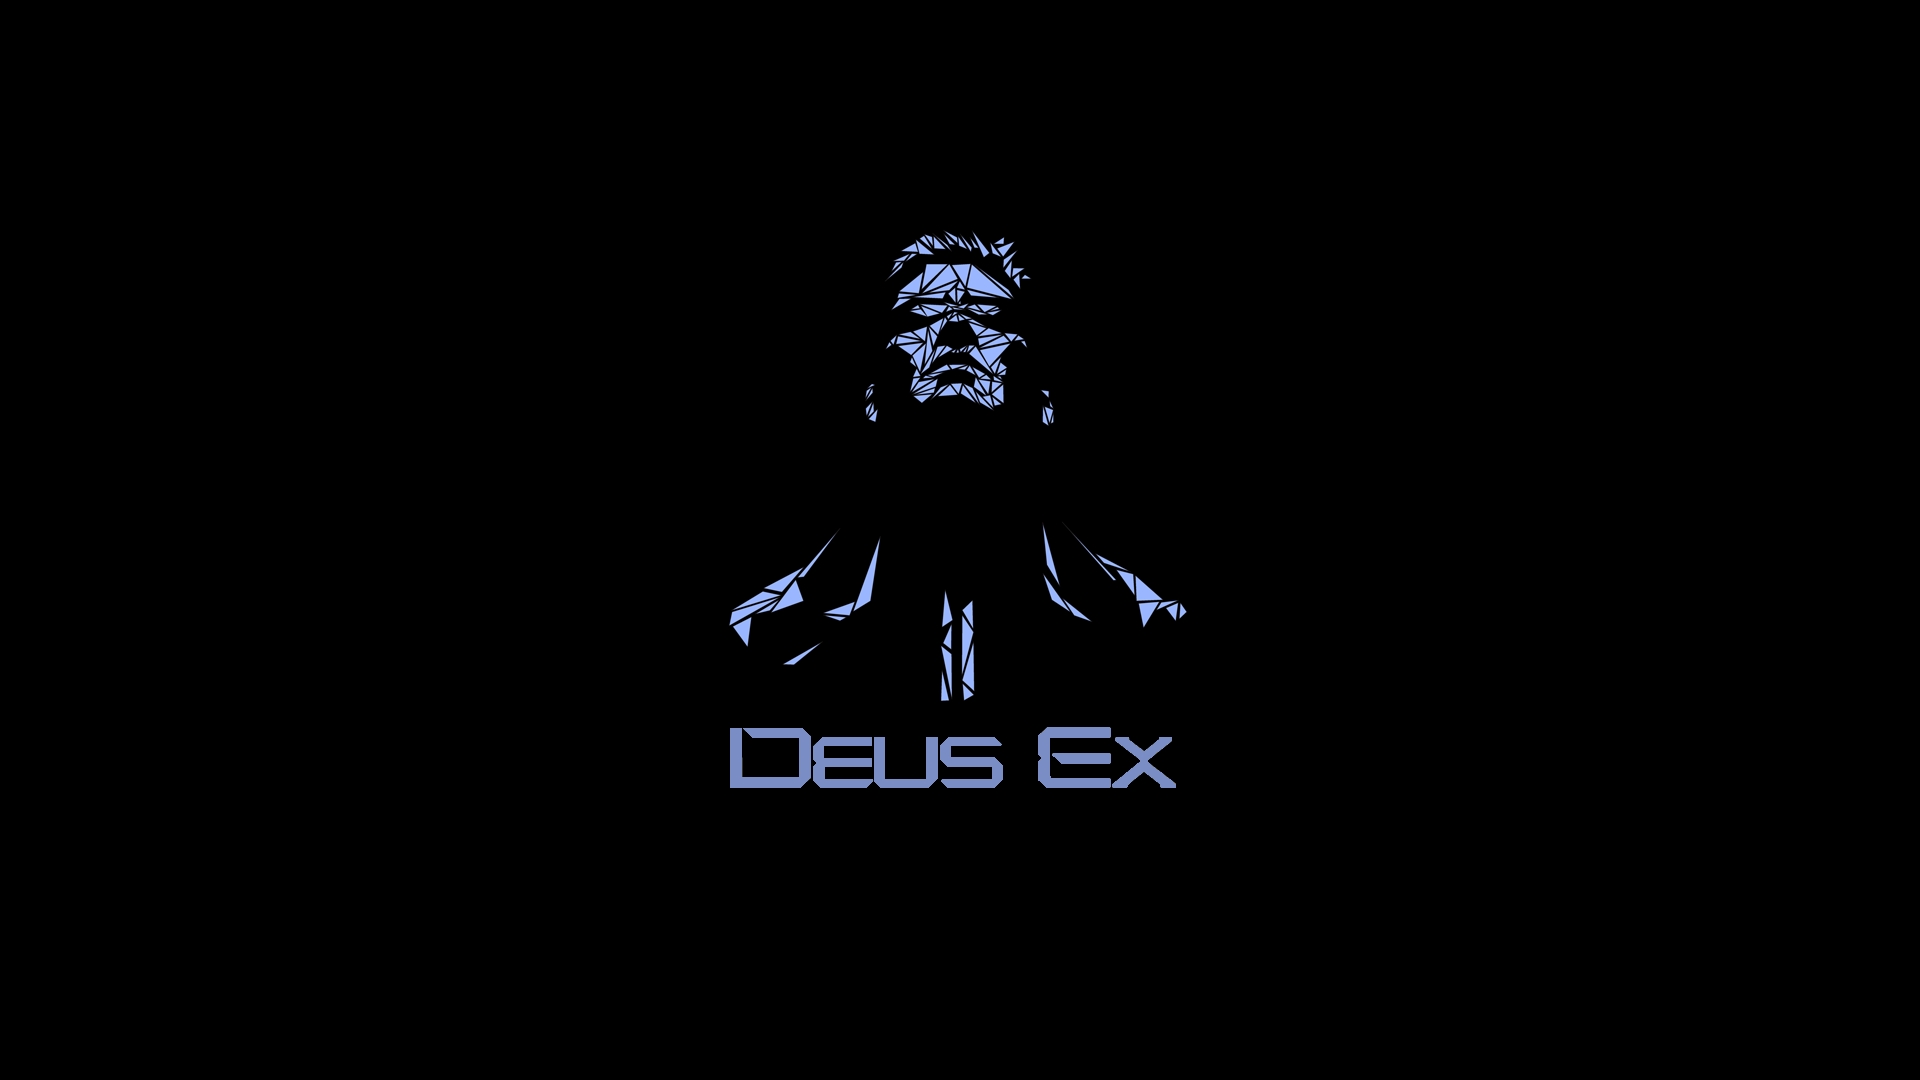 Wallpaper Deus Ex Face Look Name Full HD 1080p